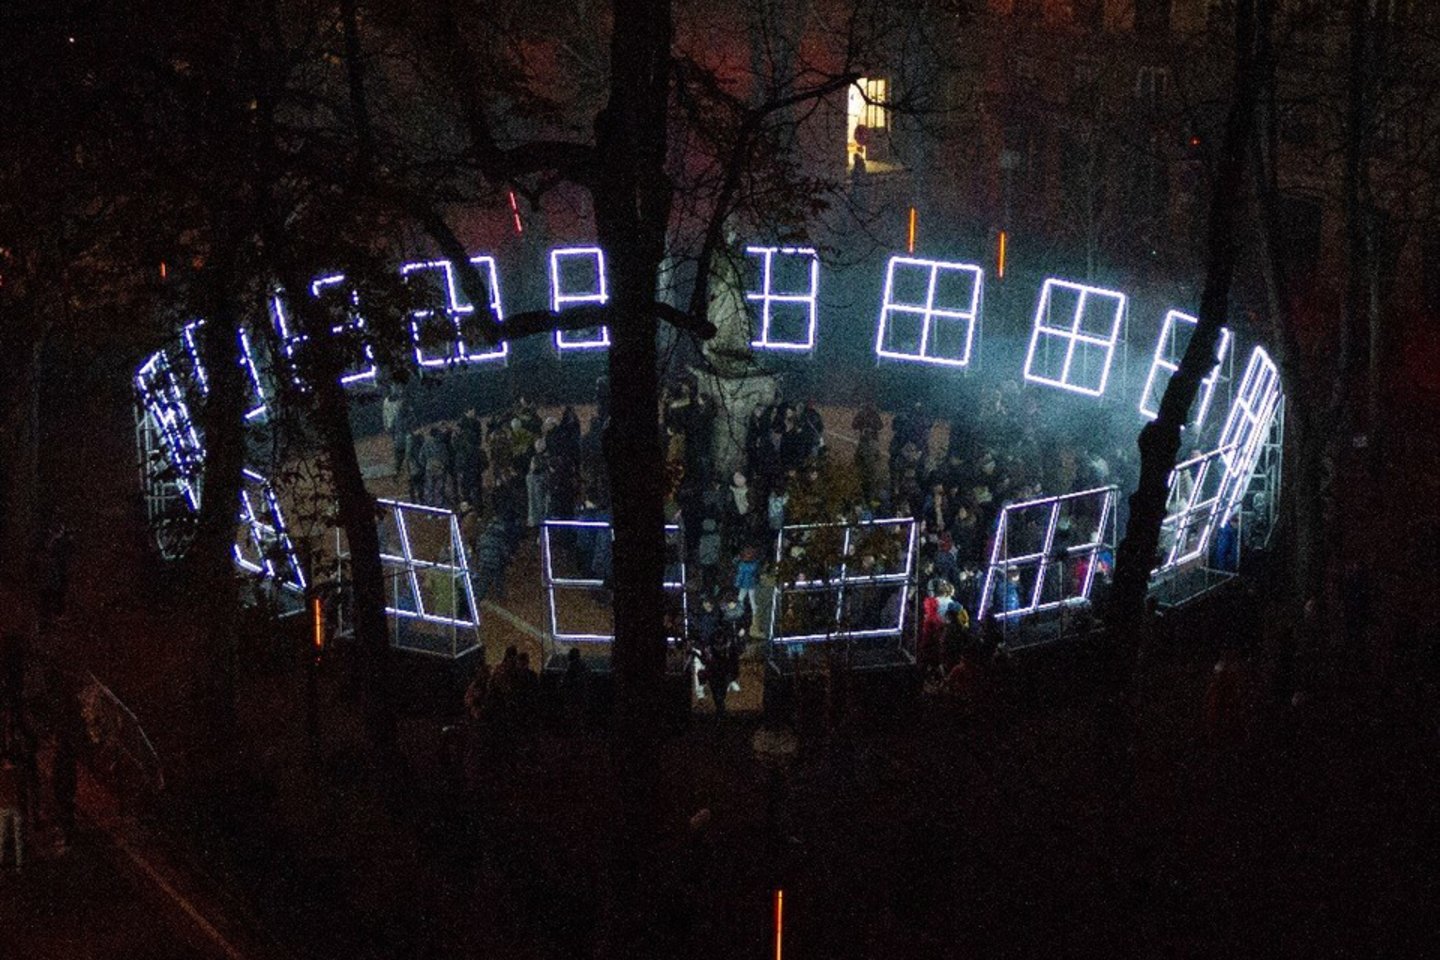 Prancūzas R.Tardy Vilniaus šviesų festivalyje pristatys savo instaliaciją „The Great Indecision Council“ („Didžioji Neryžtingumo Taryba“), kuri bus eksponuojama Lukiškių kalėjime 2.0.